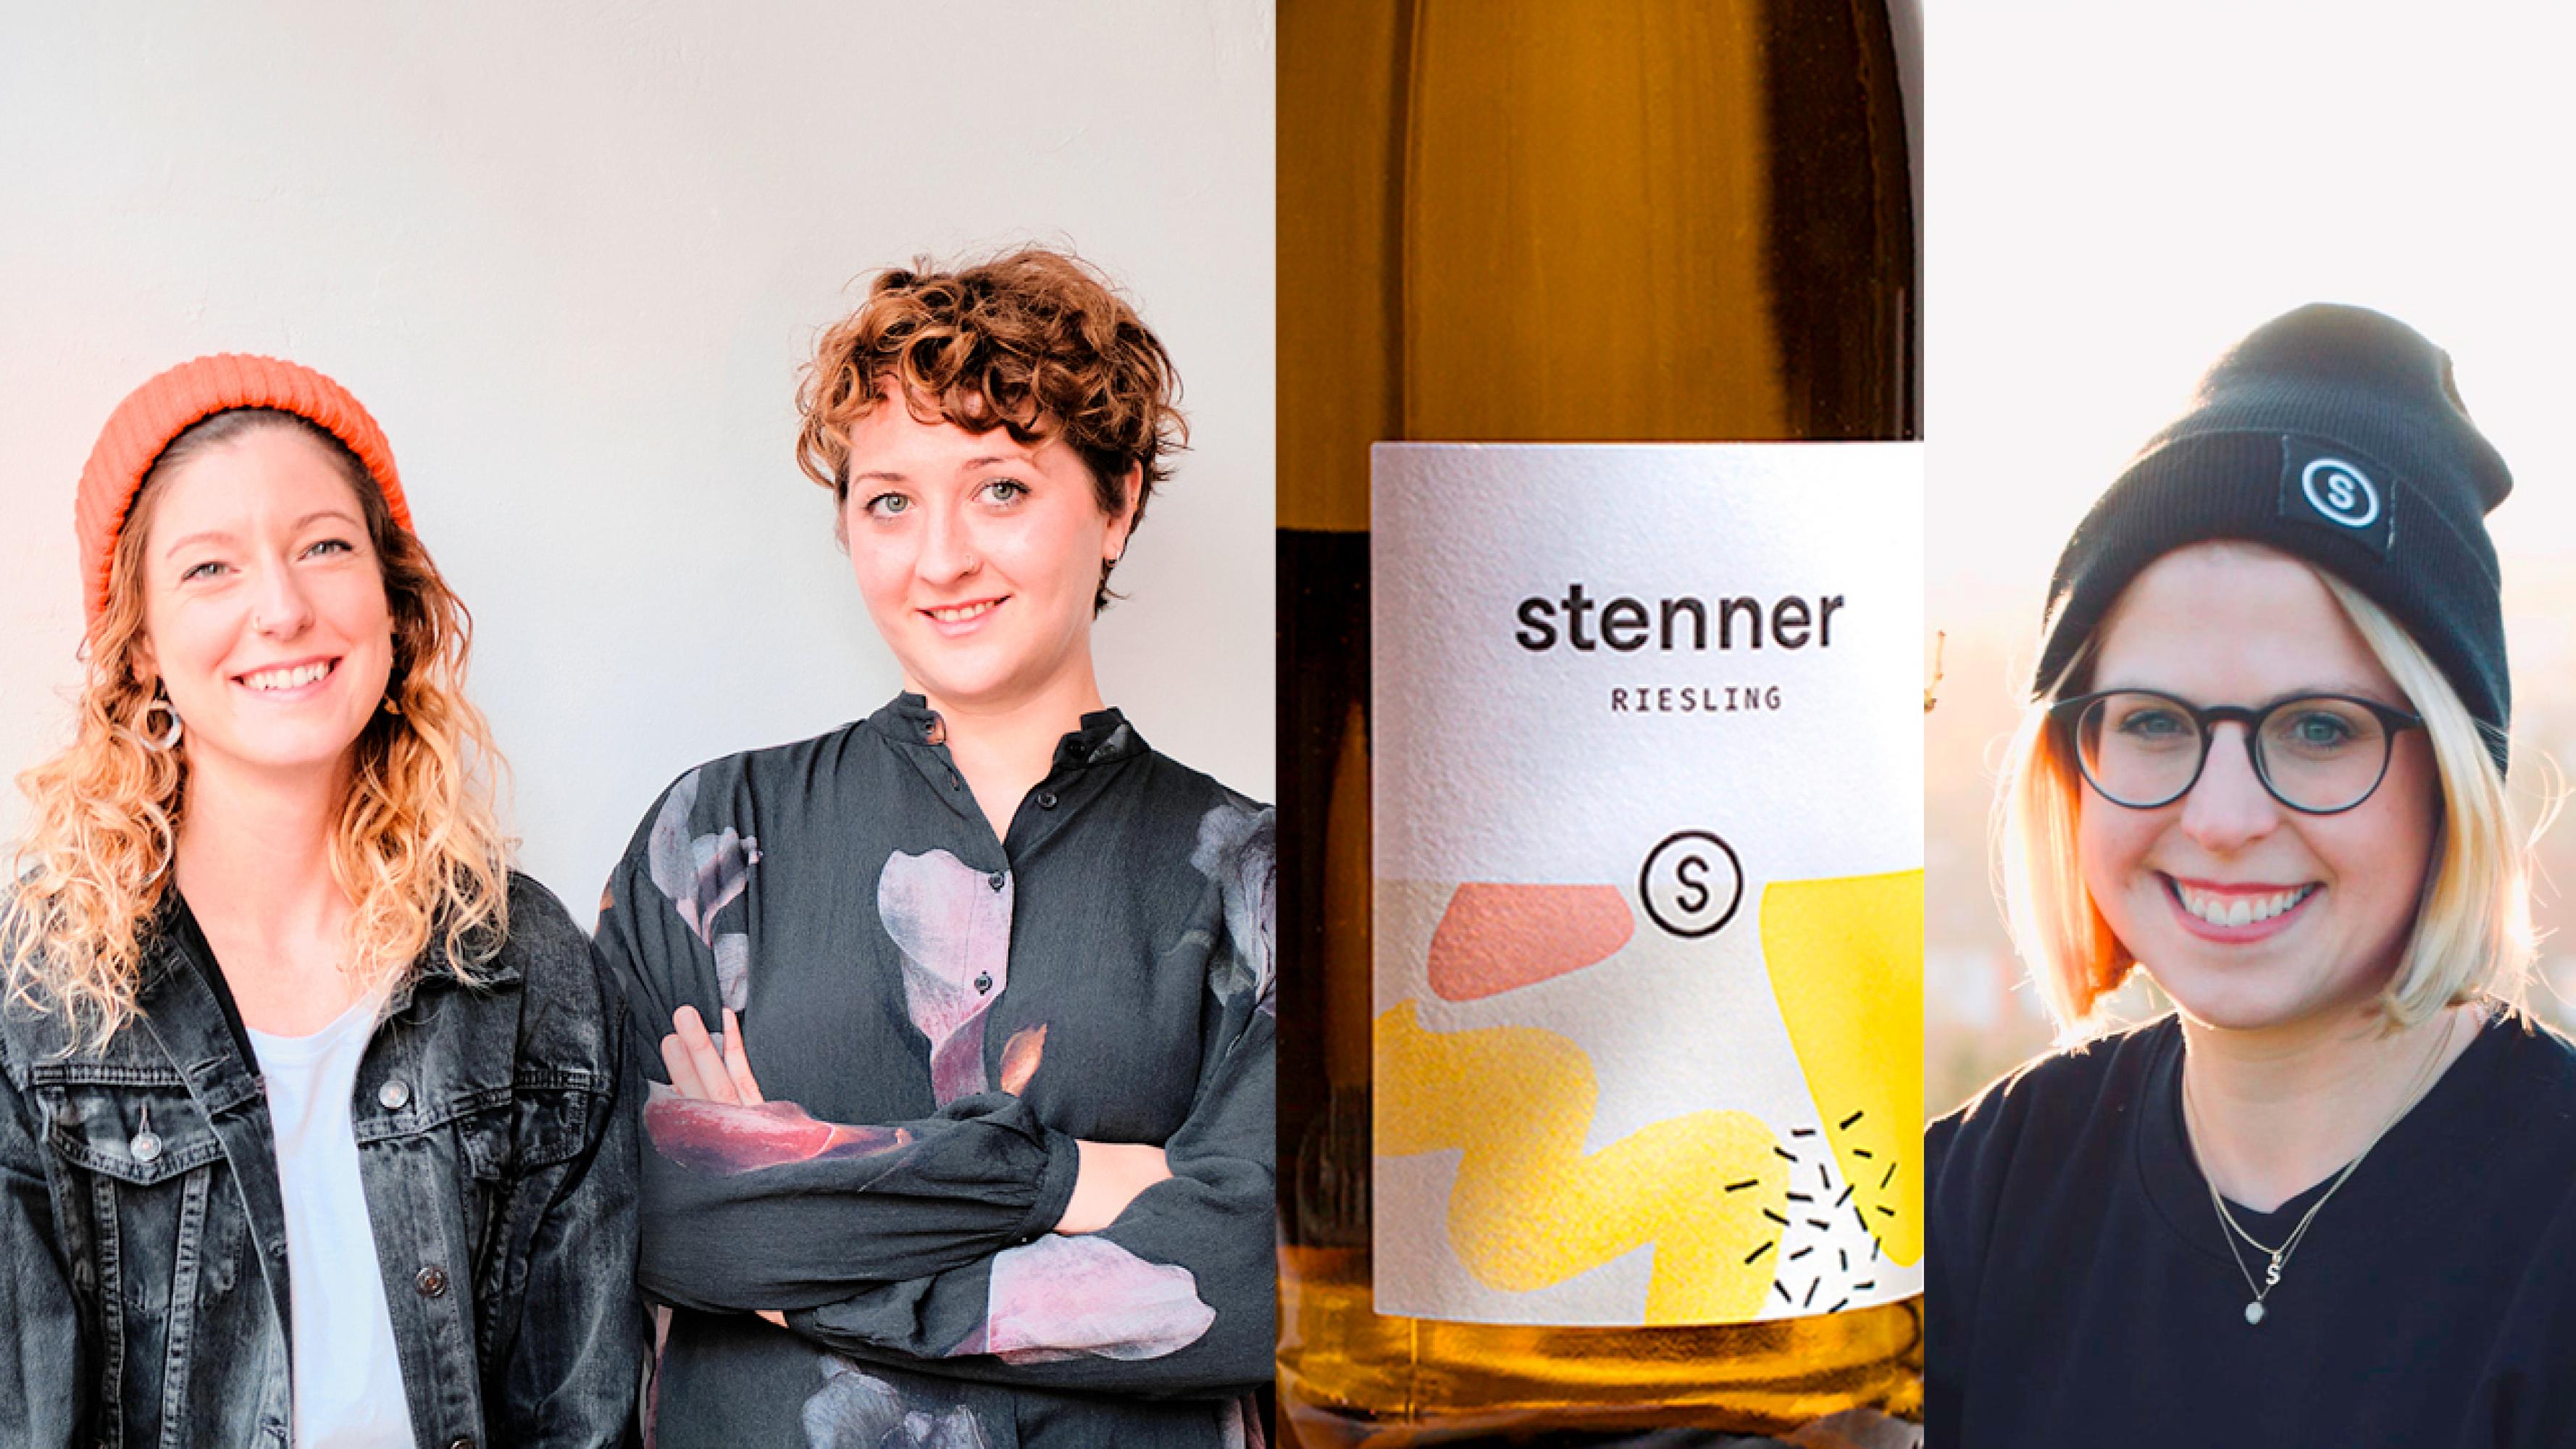 Agentur alma: Alice Schaffner und Marie-Niamh Dowling neben einer Weinflasche mit dem von ihnen entwickelten Etikett für das Weingut Stenner. Daneben Malenka Stenner